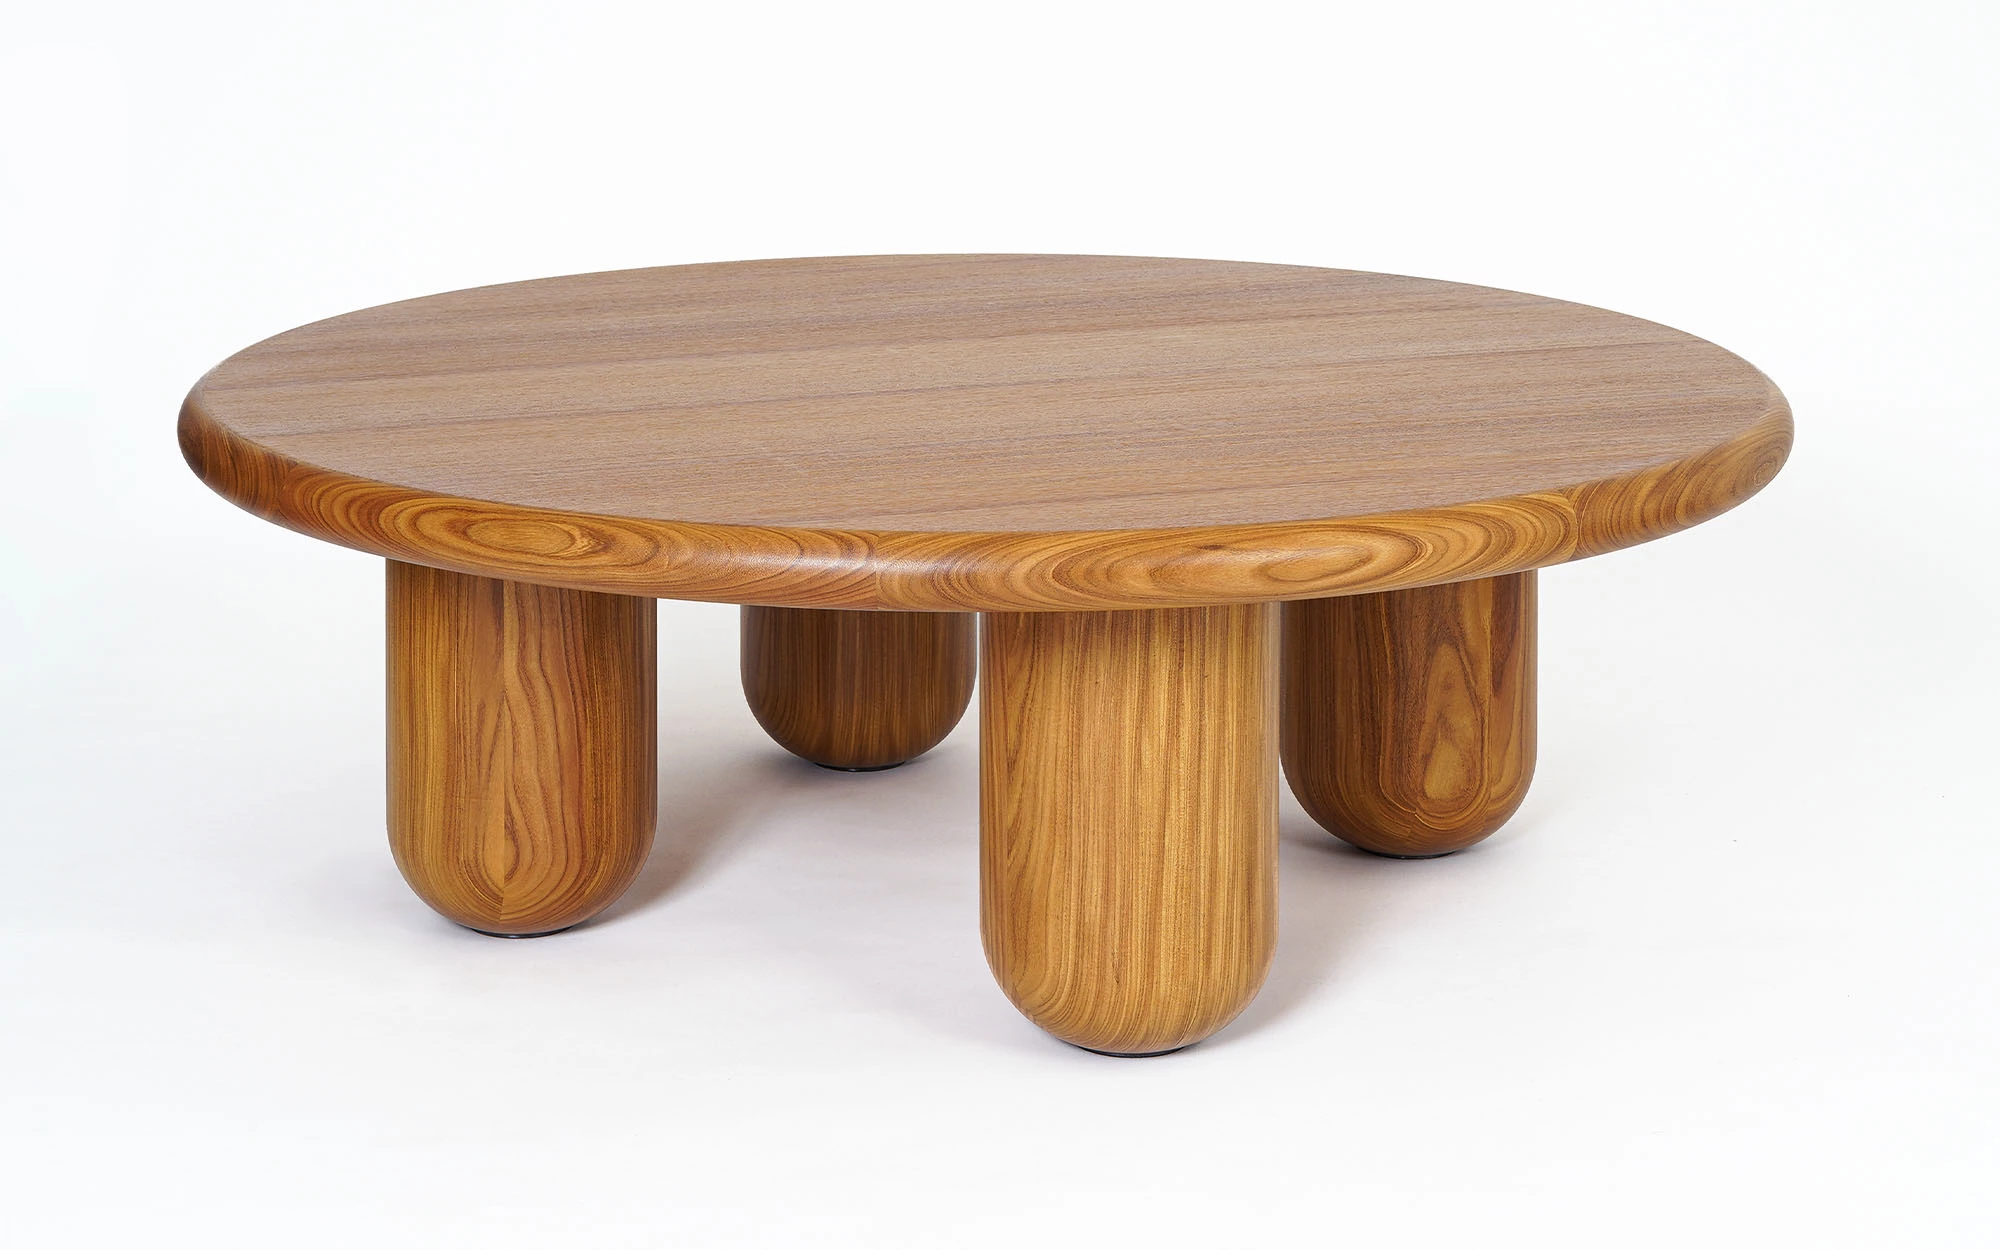 Organism coffee table - Jaime Hayon - Bench - Galerie kreo